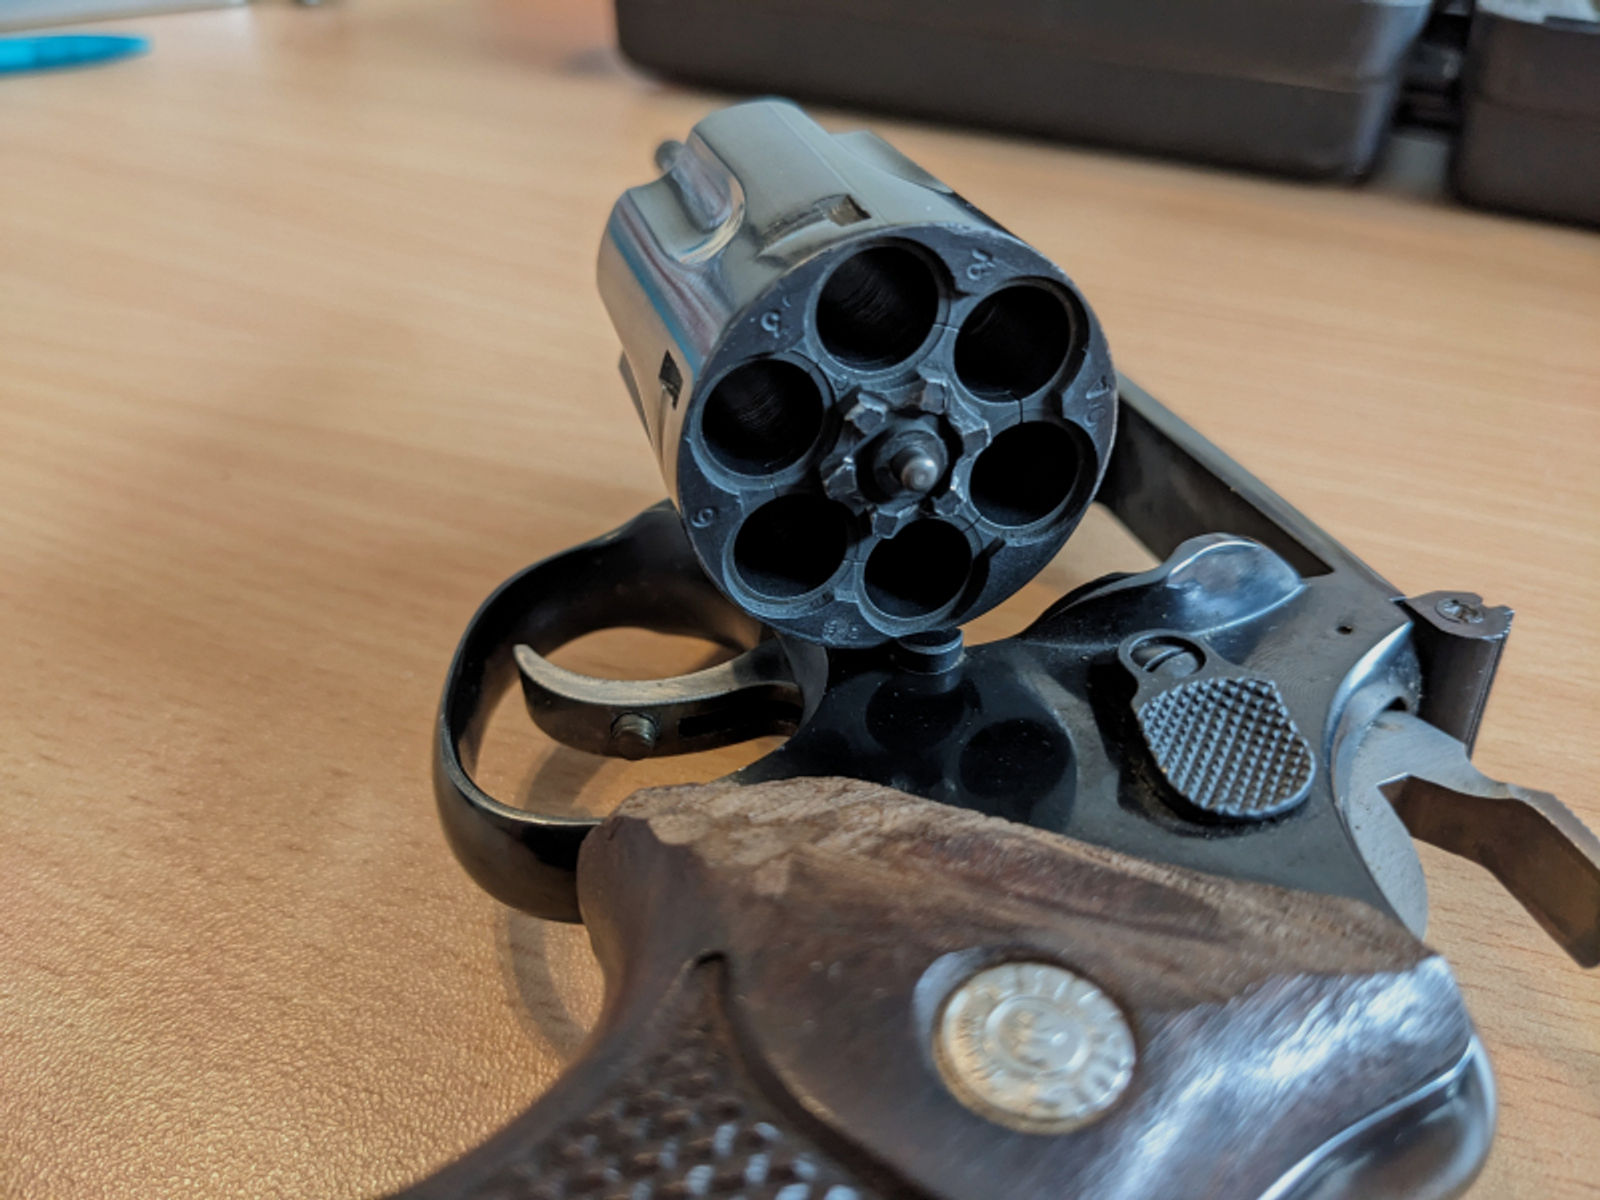 Taurus Revolver 357 Mag, 3"